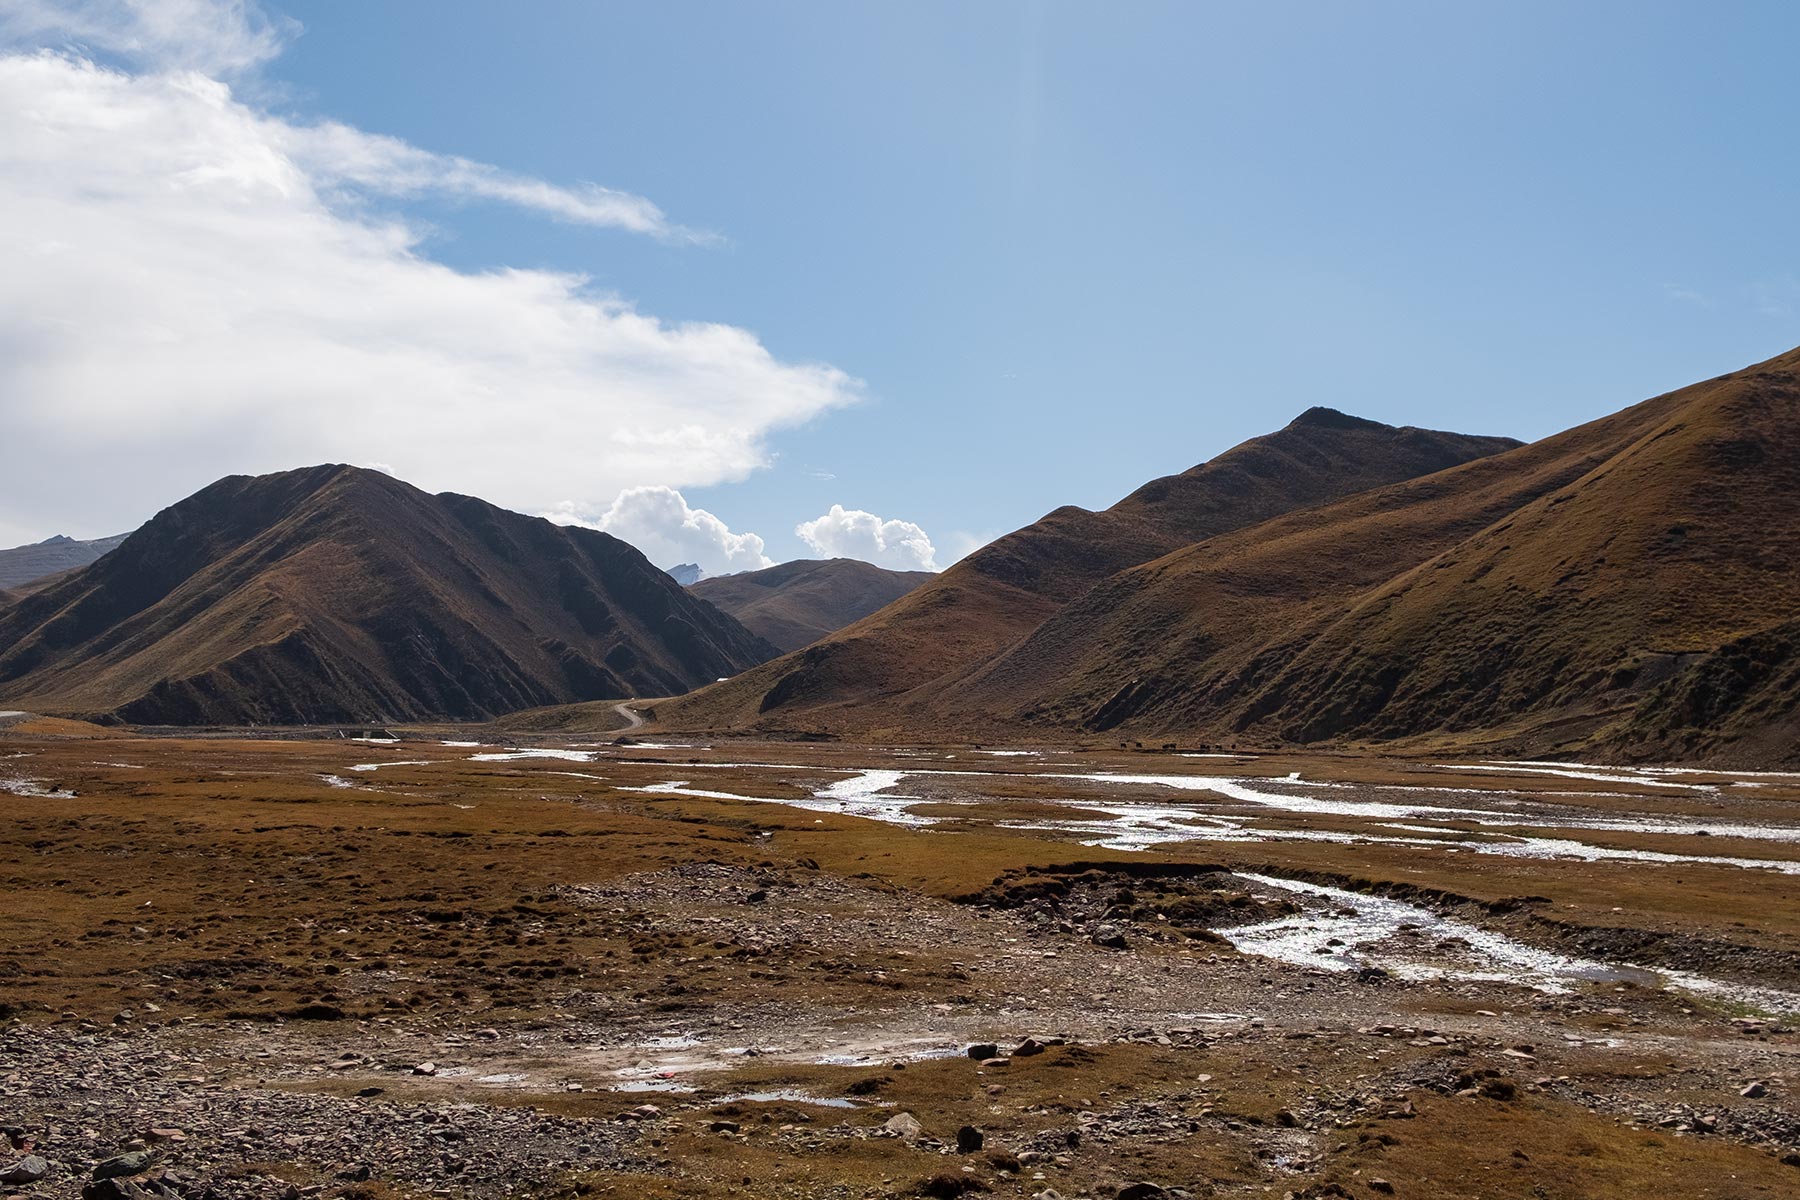 Fahrt von Gansu nach Qinghai durch die Berge